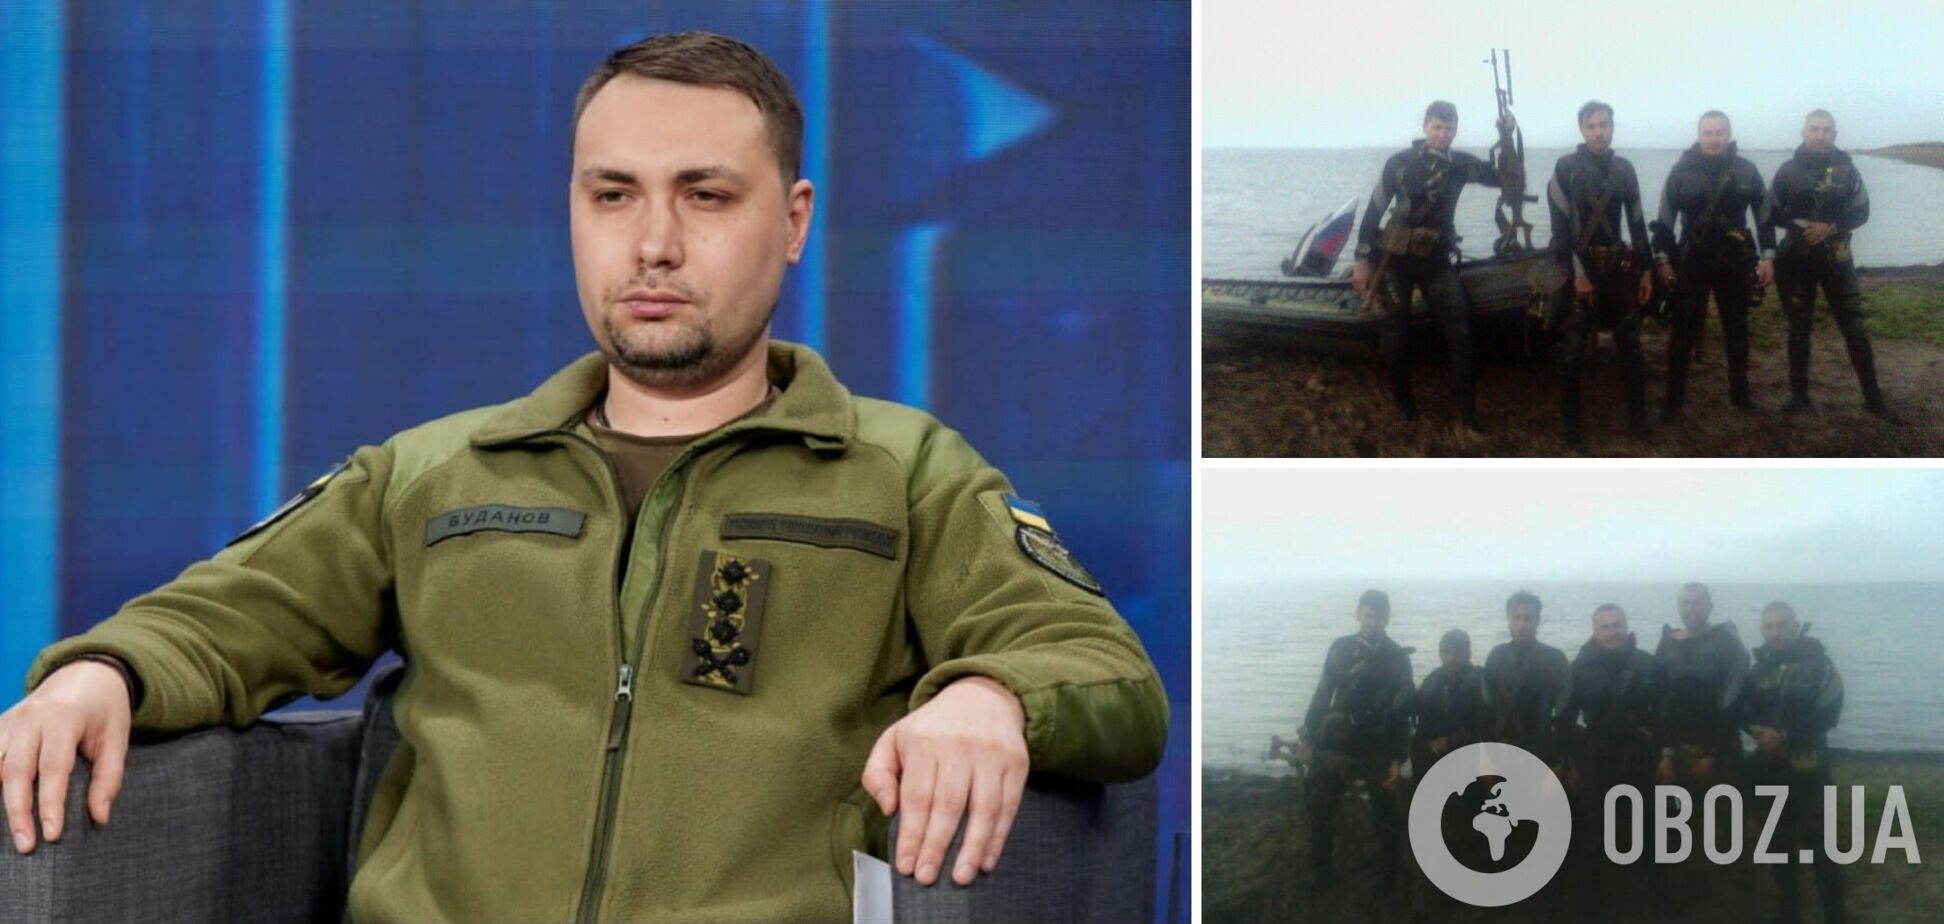 'Более 4-6 часов плыли с гранатами в руках': стали известны новые детали рейда в Крым, который в 2016 году возглавлял Буданов